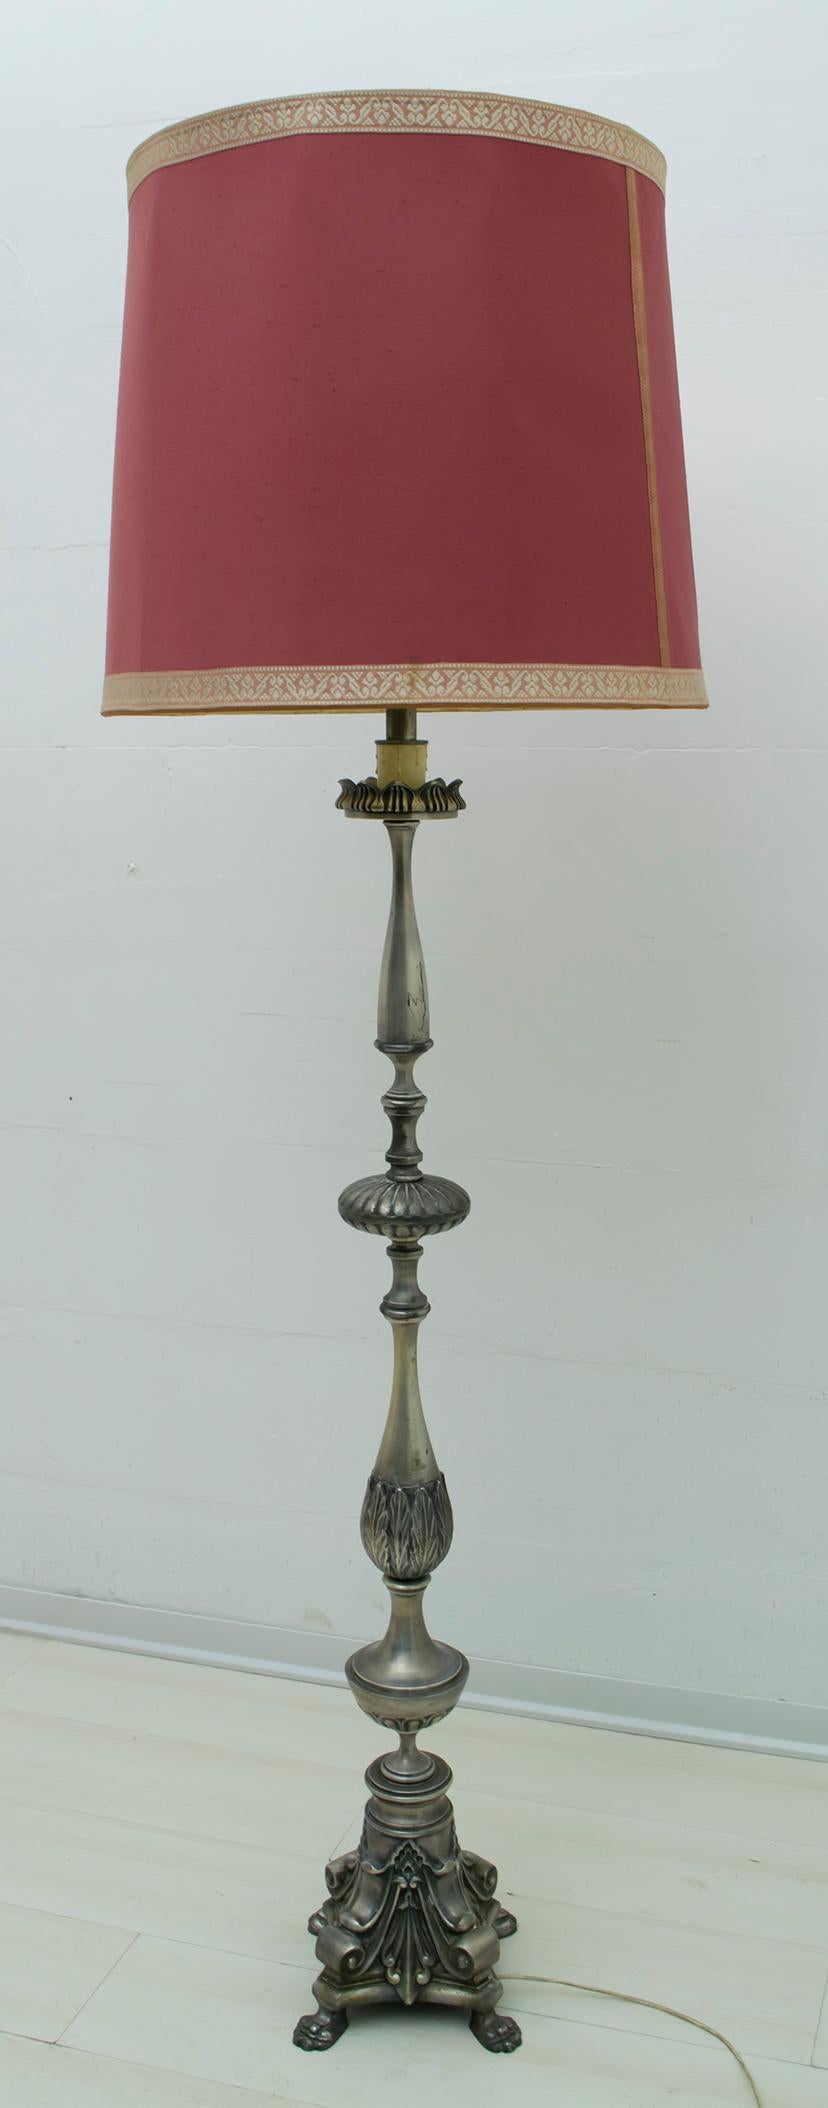 Ce magnifique lampadaire en laiton argenté a été produit en Italie dans le style néoclassique.

